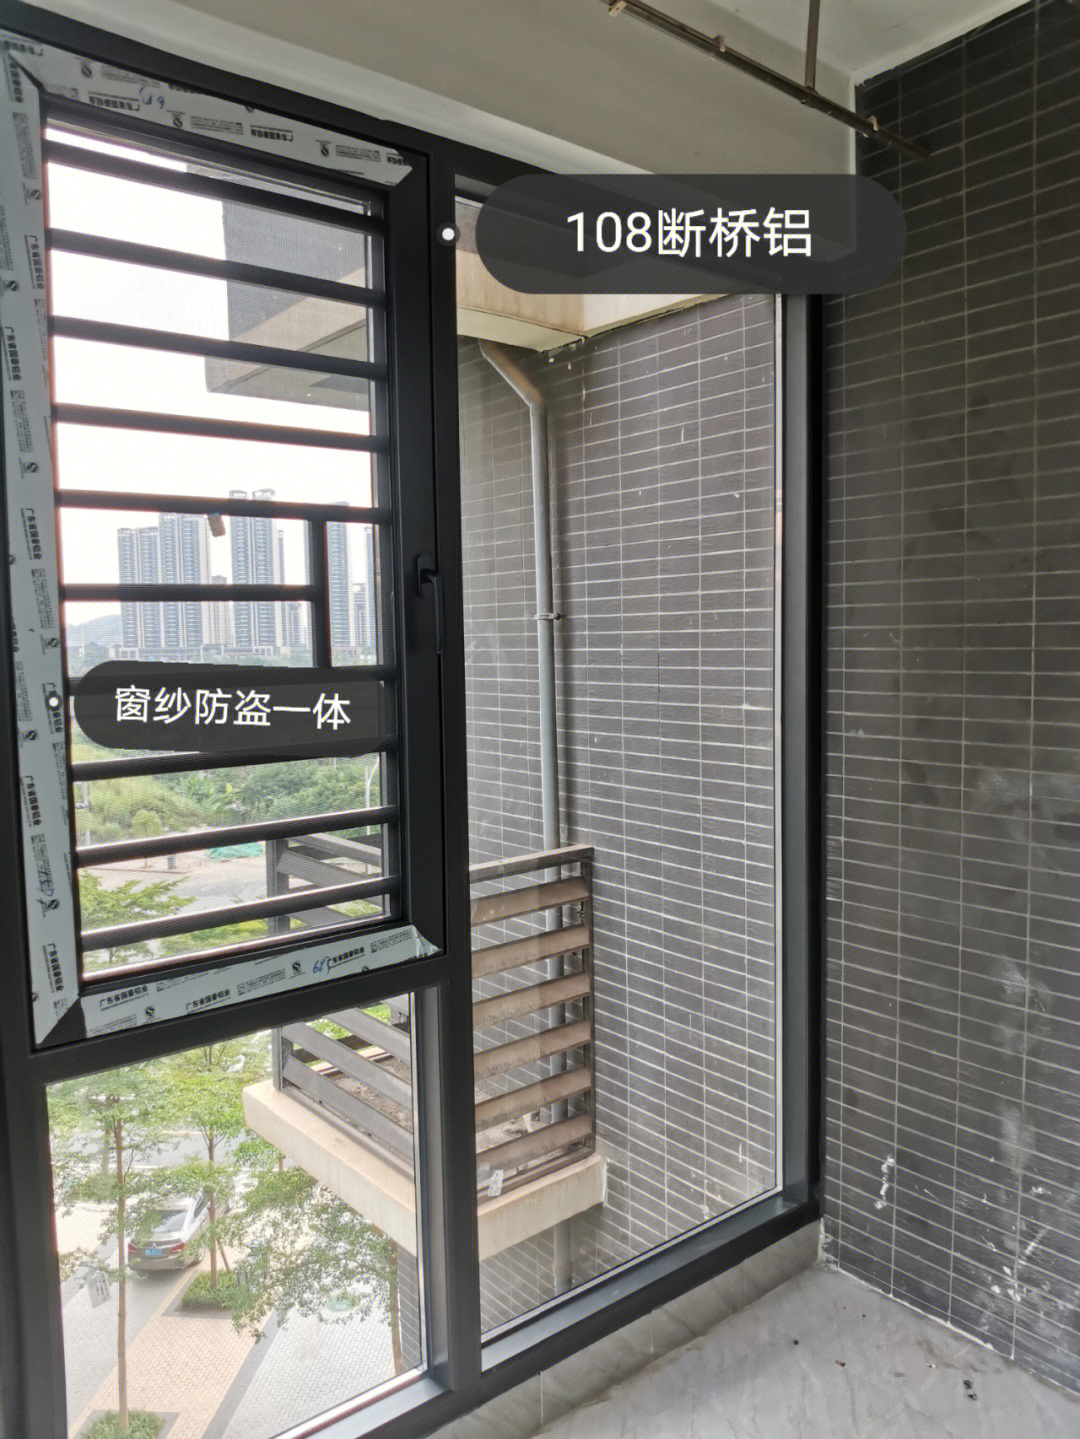 108断桥铝封阳台,安全性更高,隔音效果好,配上落地大玻璃更美观时尚